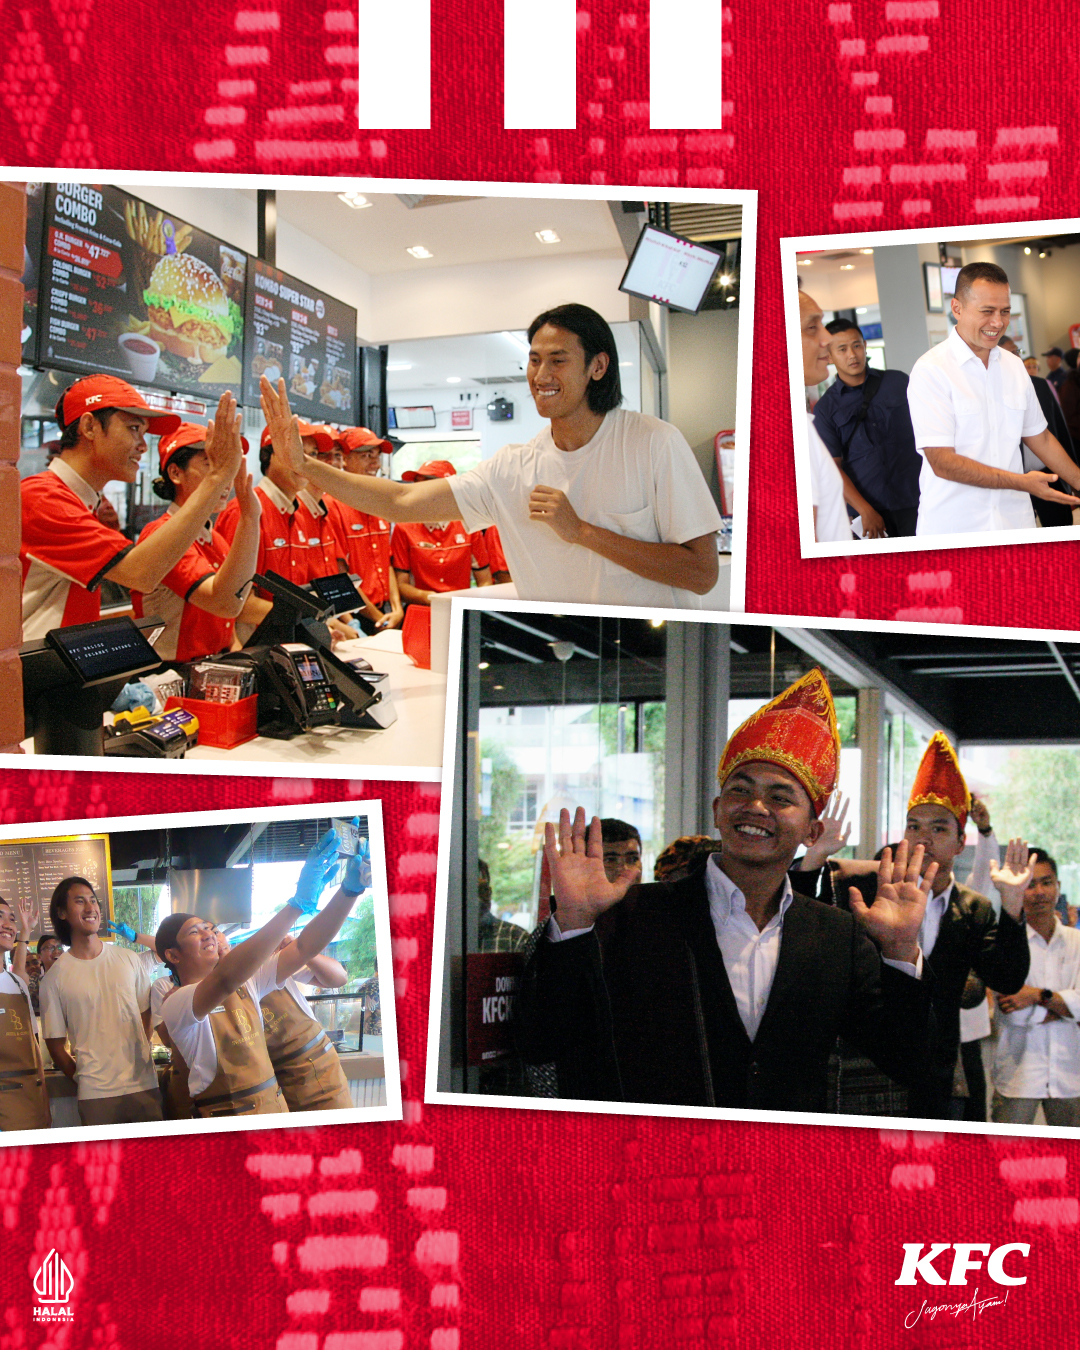 Pembukaan KFC Balige Sumatra Utara